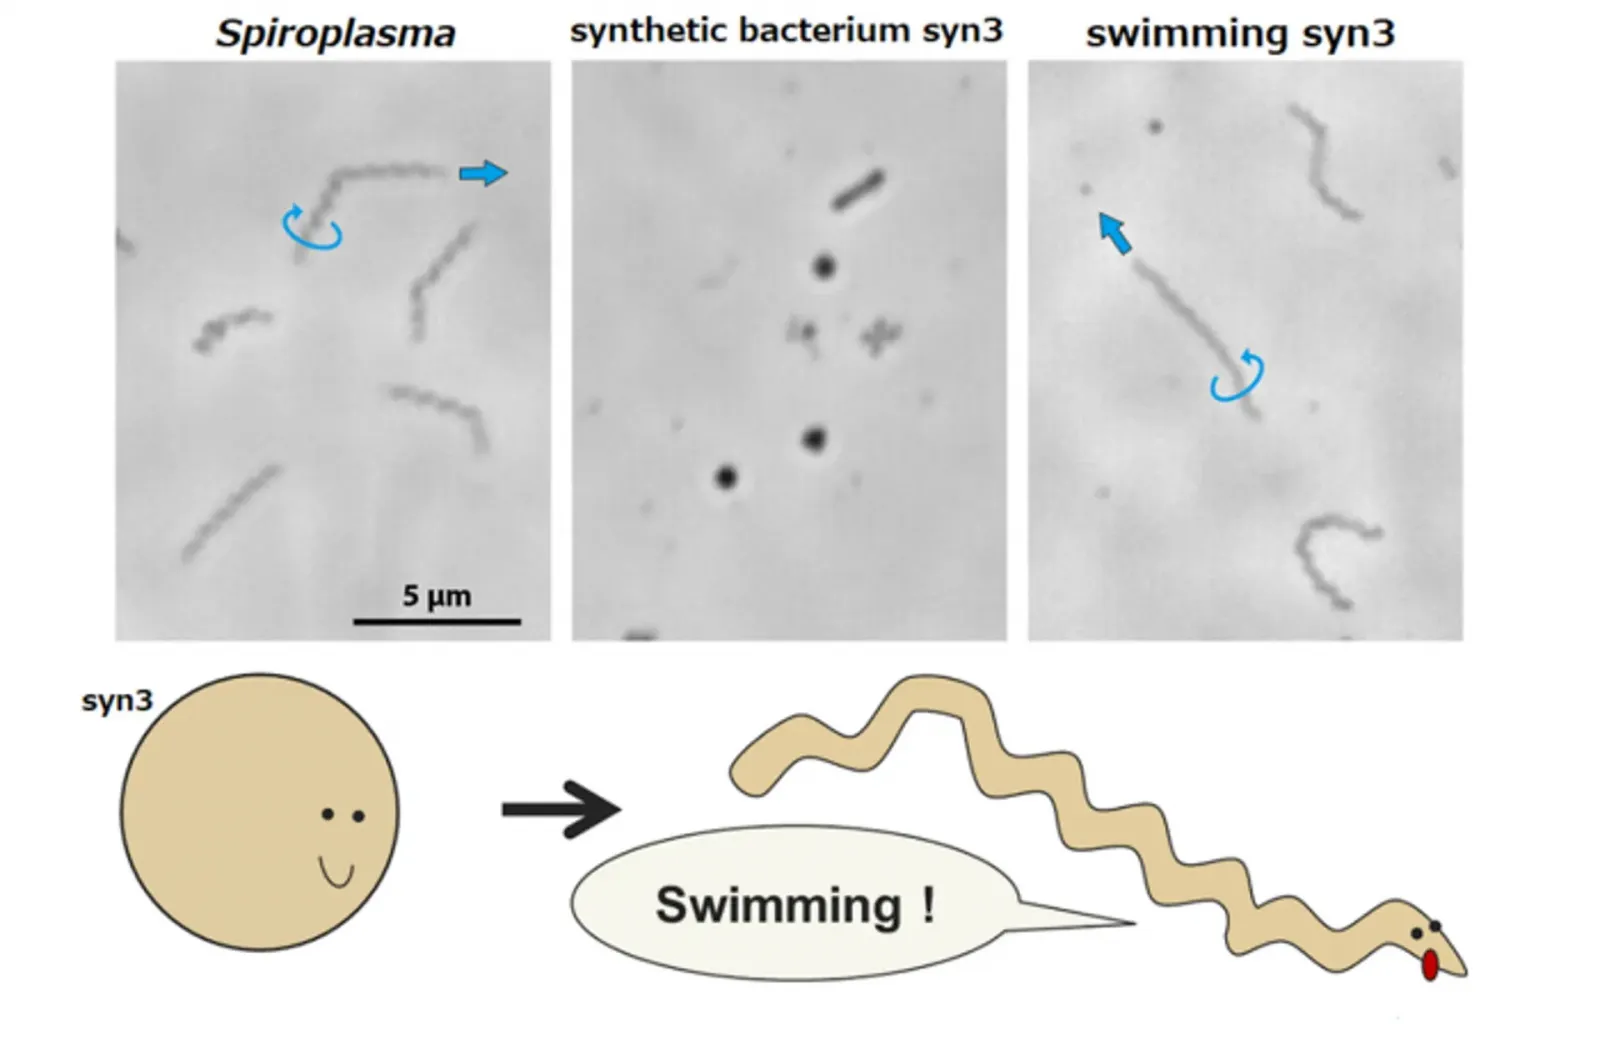 Искусственная эволюция синтетической бактерии syn3.